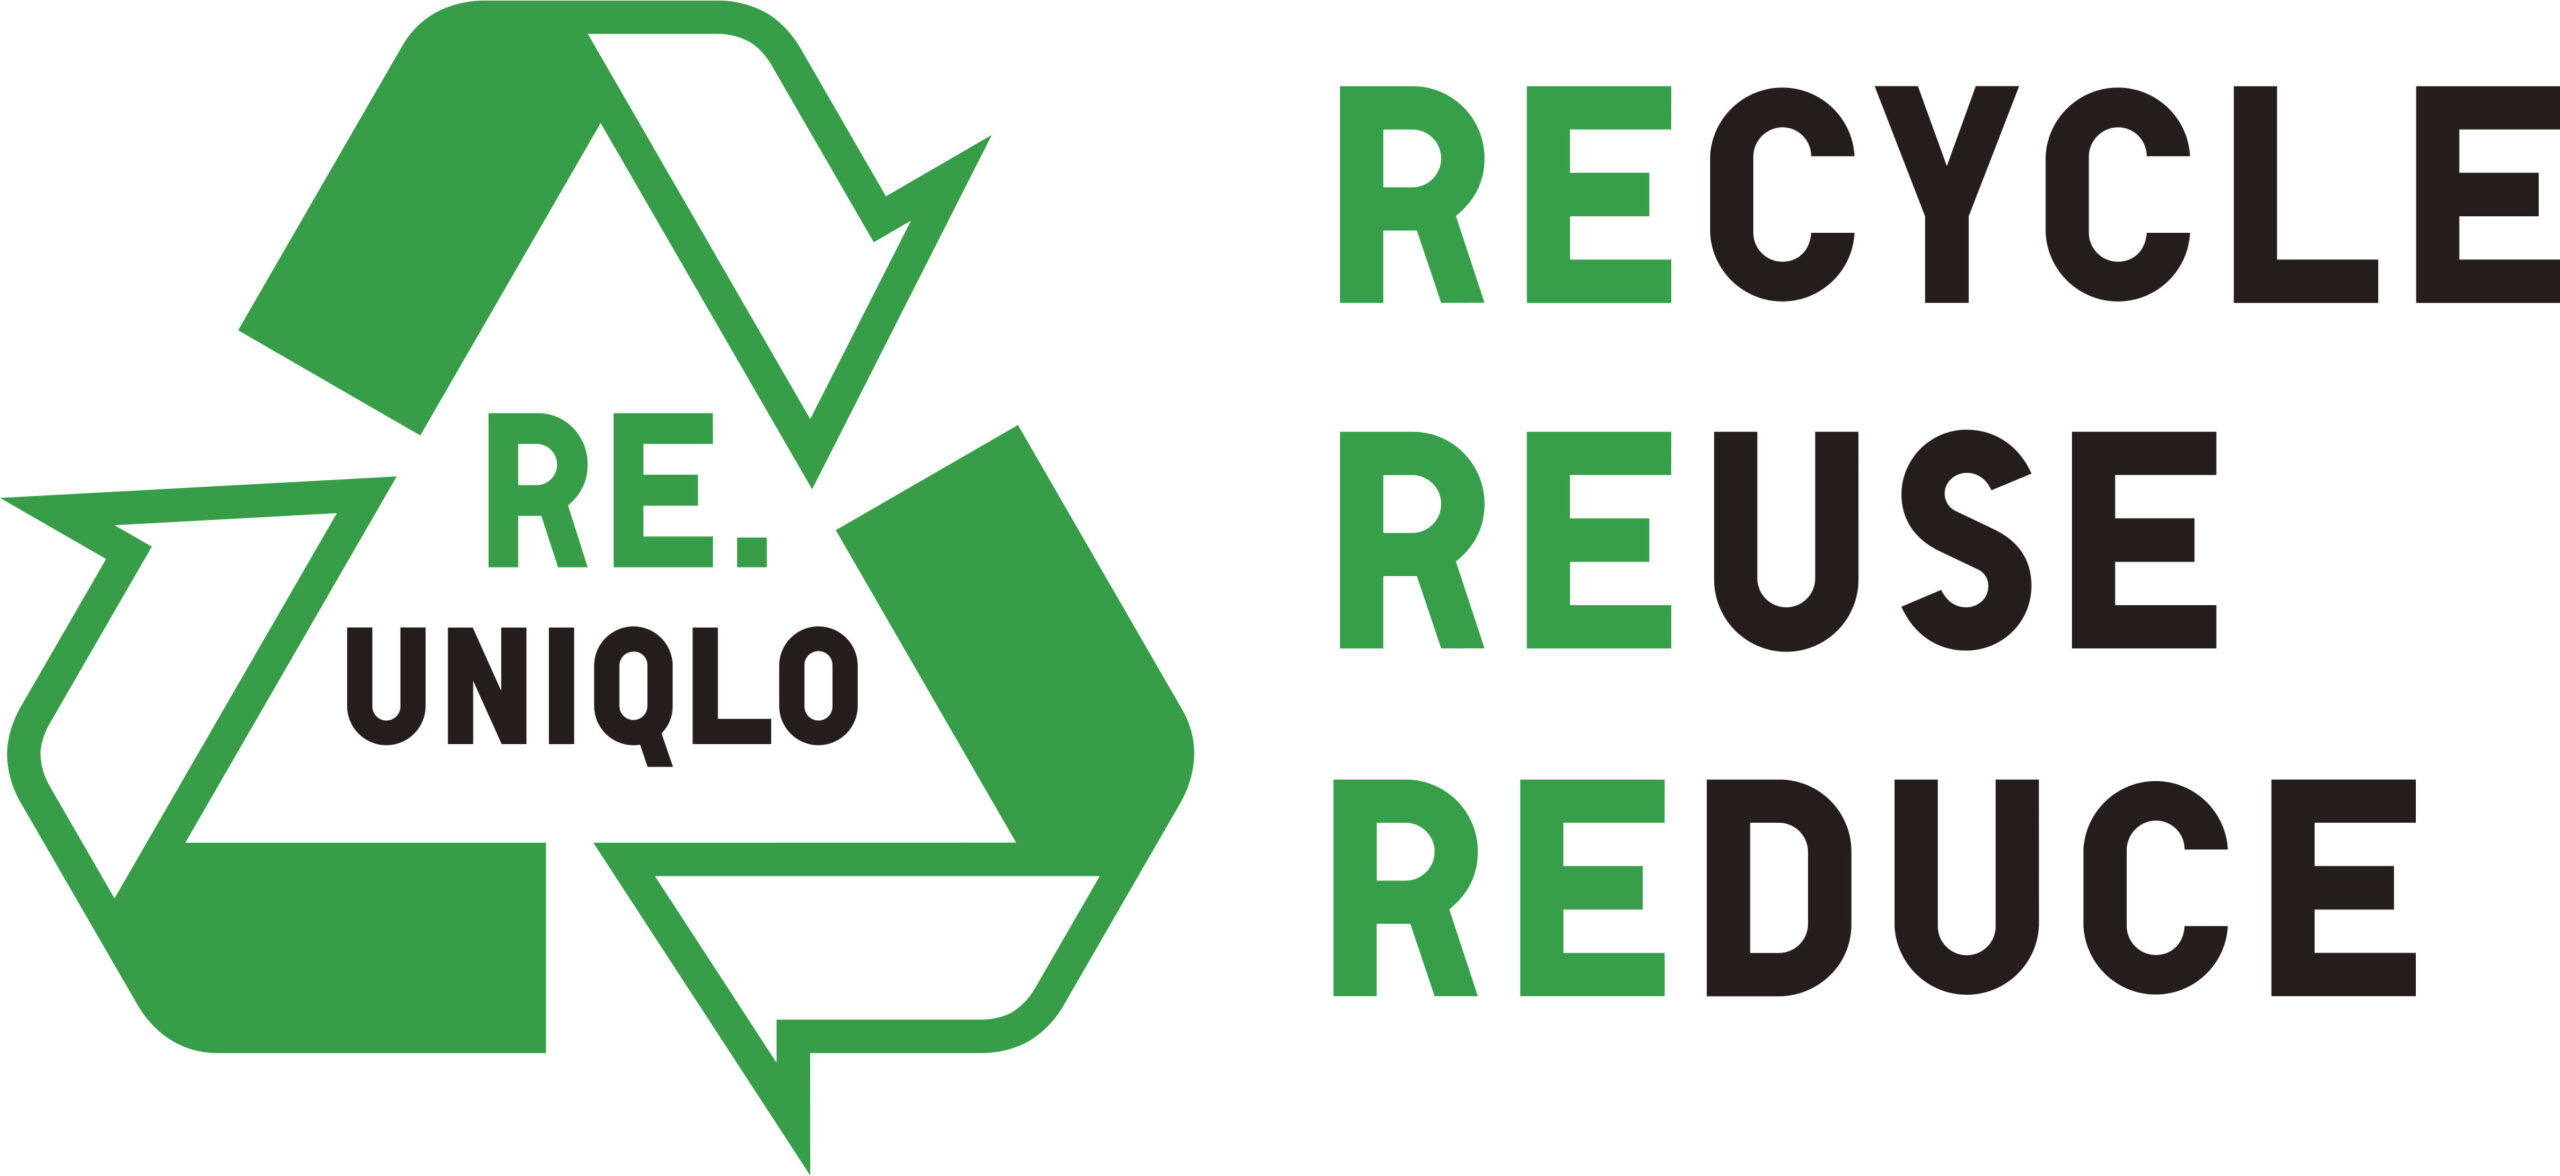 ユニクロの「Recycle, reuse, reduce」（リサイクル・リユース・リデュース）キャンペーン